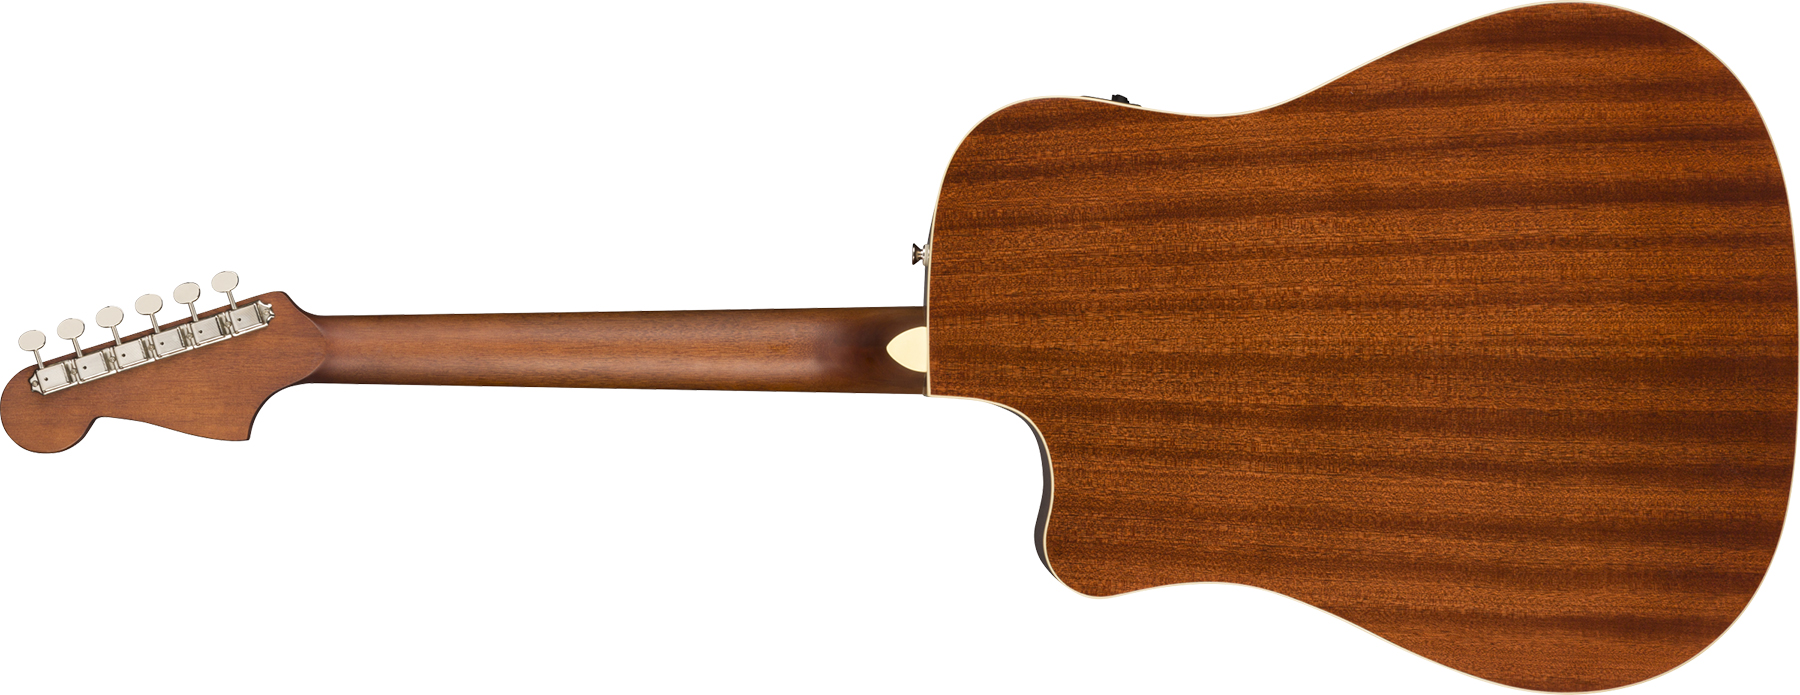 Fender Redondo California Player Dreadnought Cw Epicea Acajou Wal - Natural - Guitarra electro acustica - Variation 1